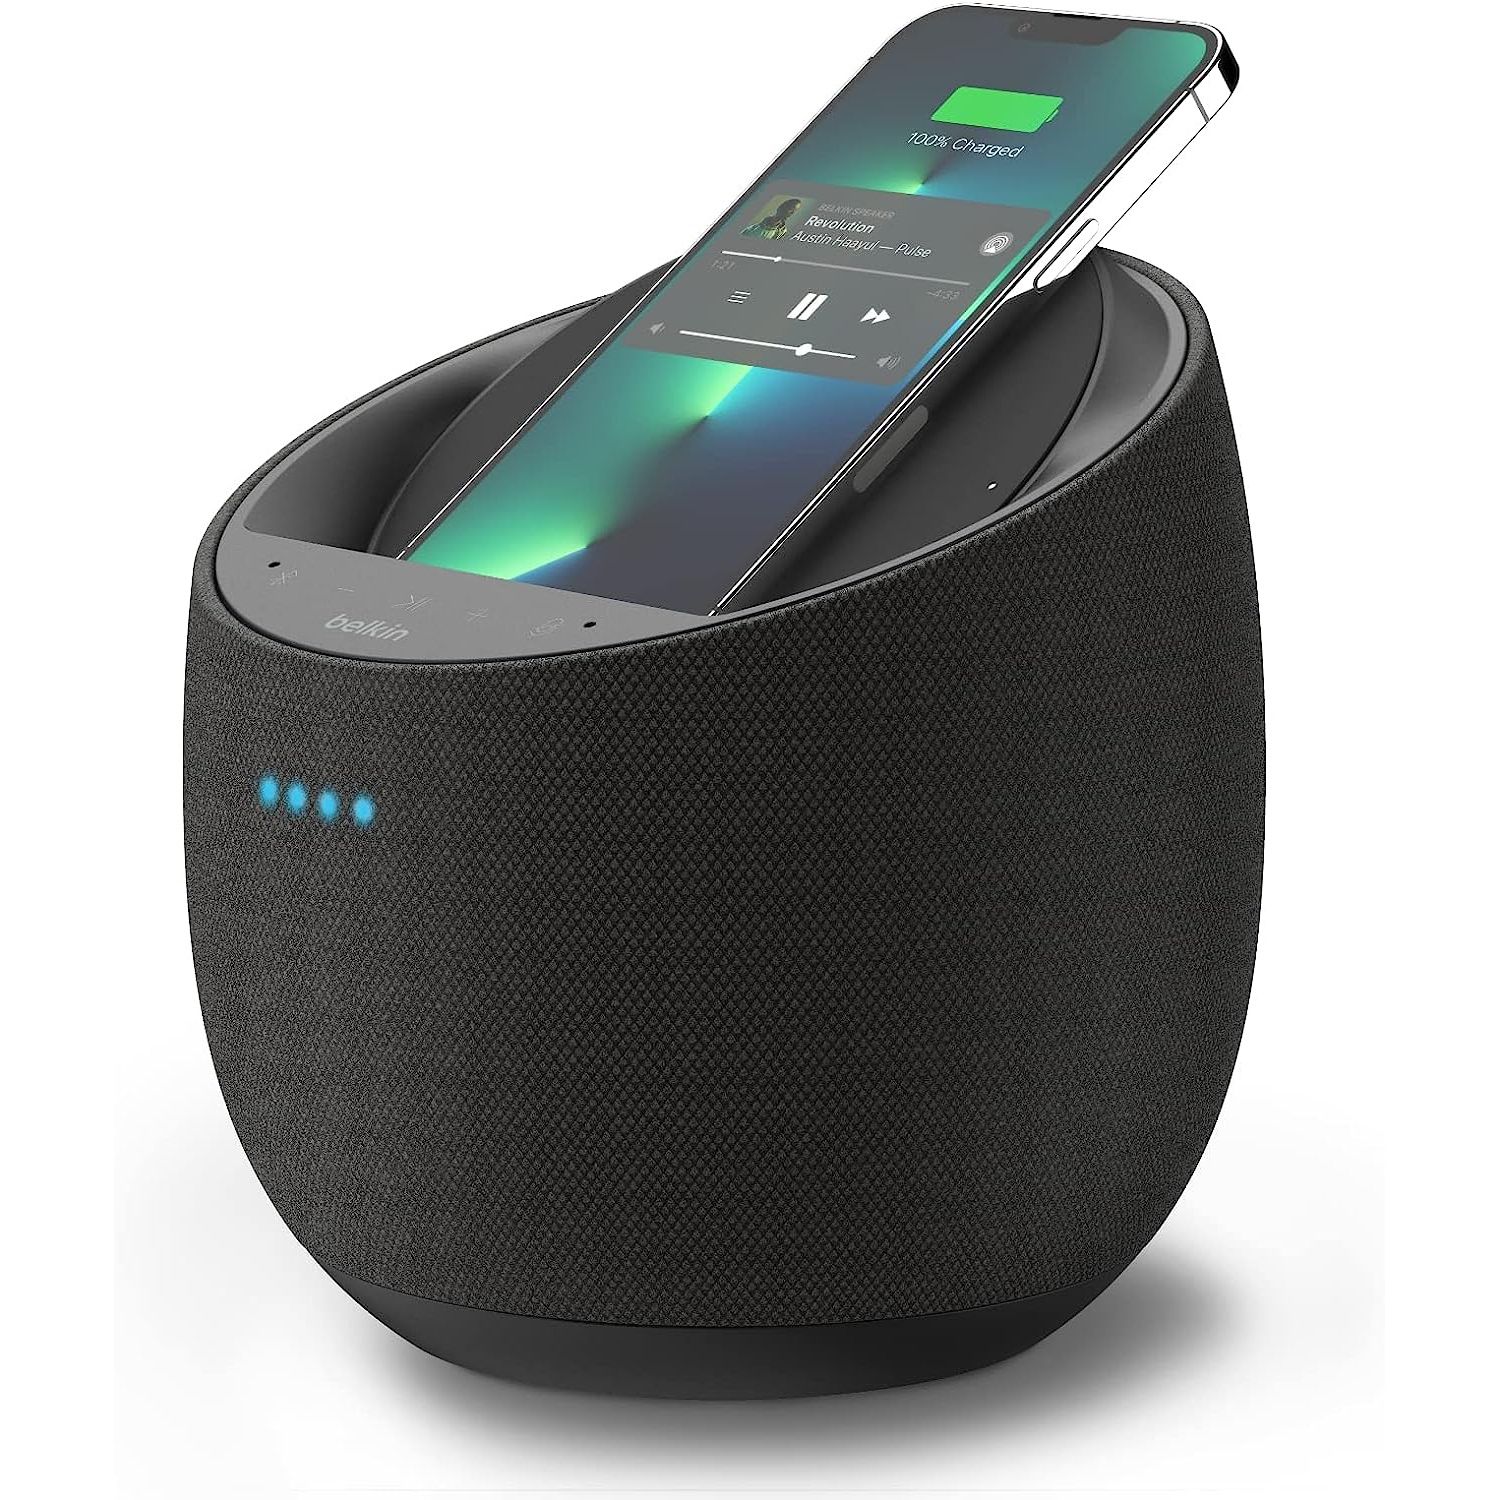 Smart speakers, Google Assistant